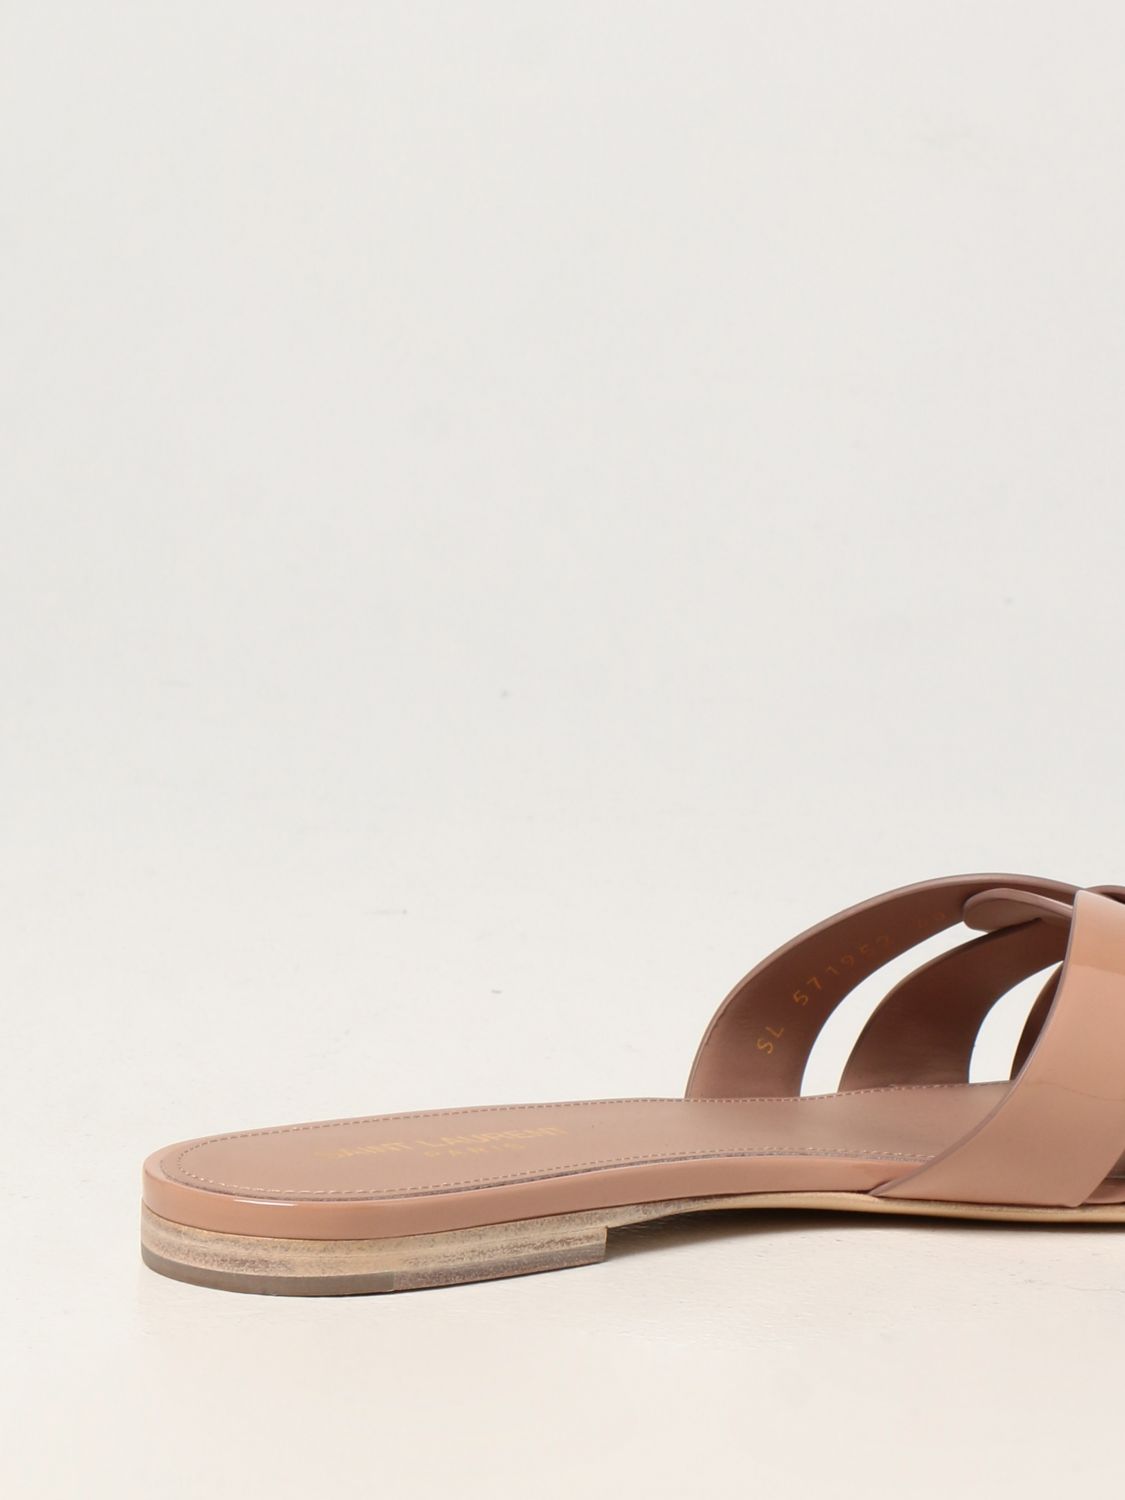 Sandalias planas Saint Laurent: Zapatos mujer Saint Laurent rosa pálido 3